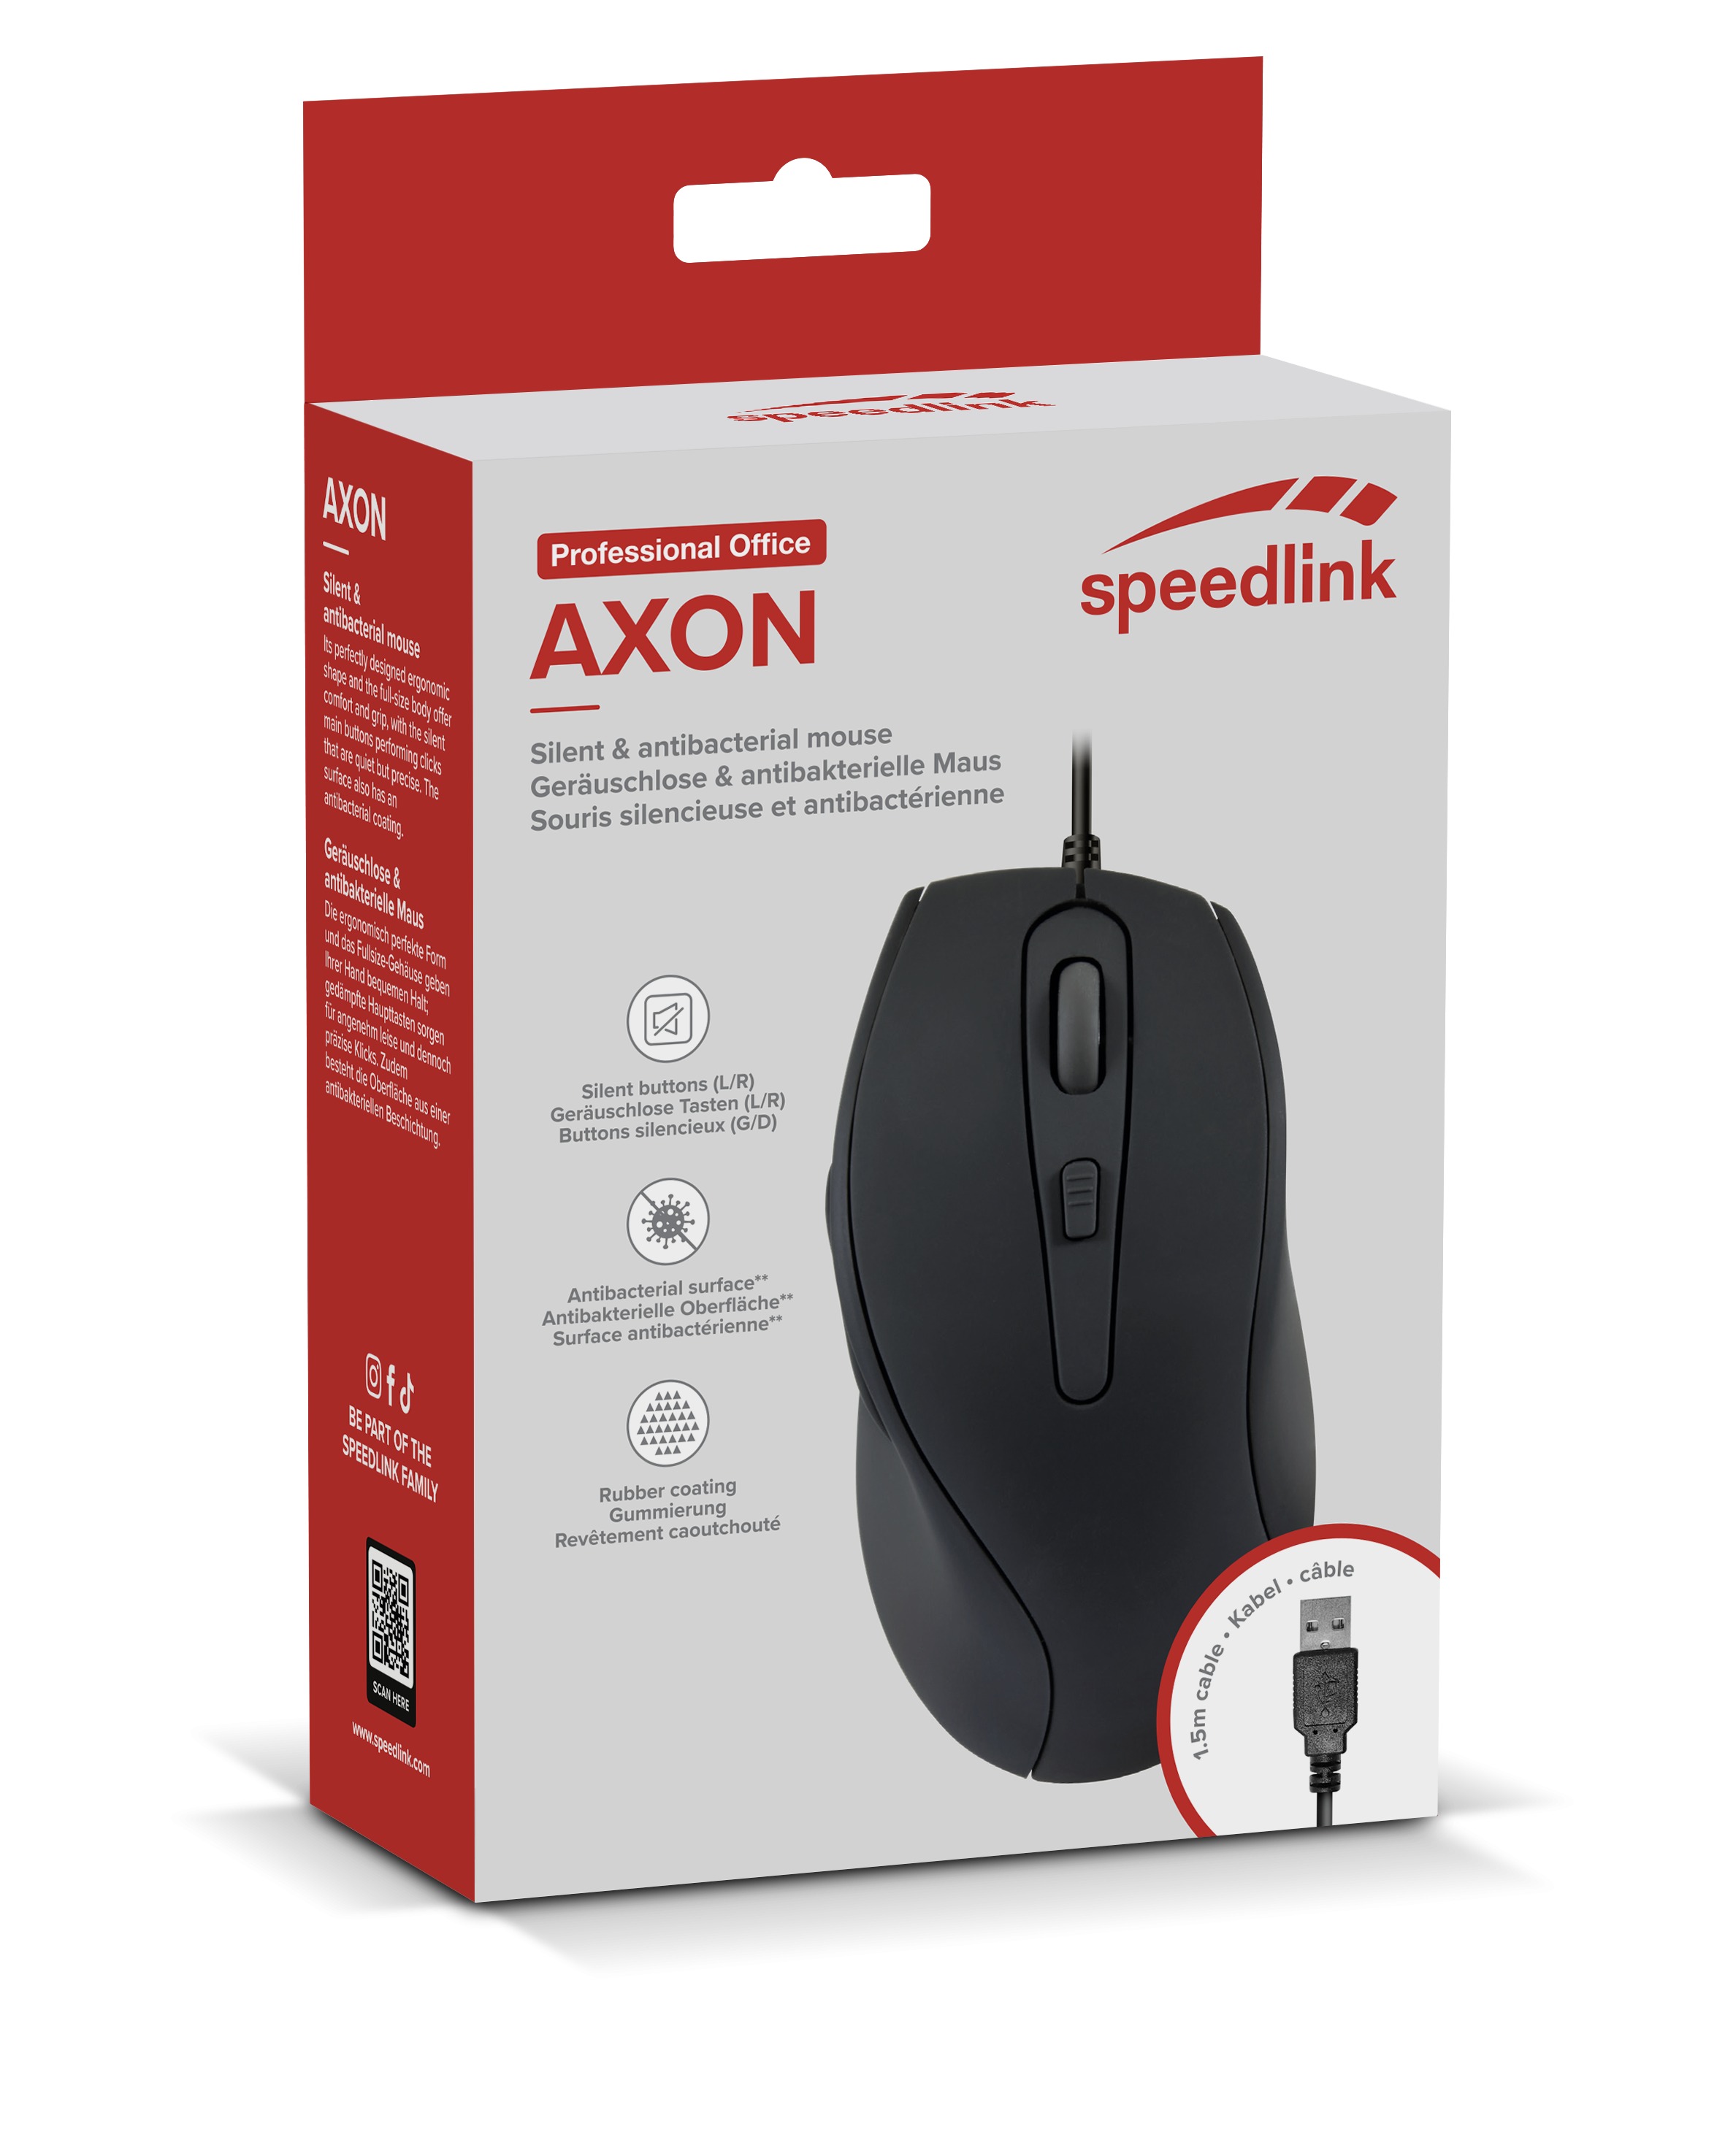 Speedlink Maus AXON,    Leise & Antibakteriell, USB, schwarz retail